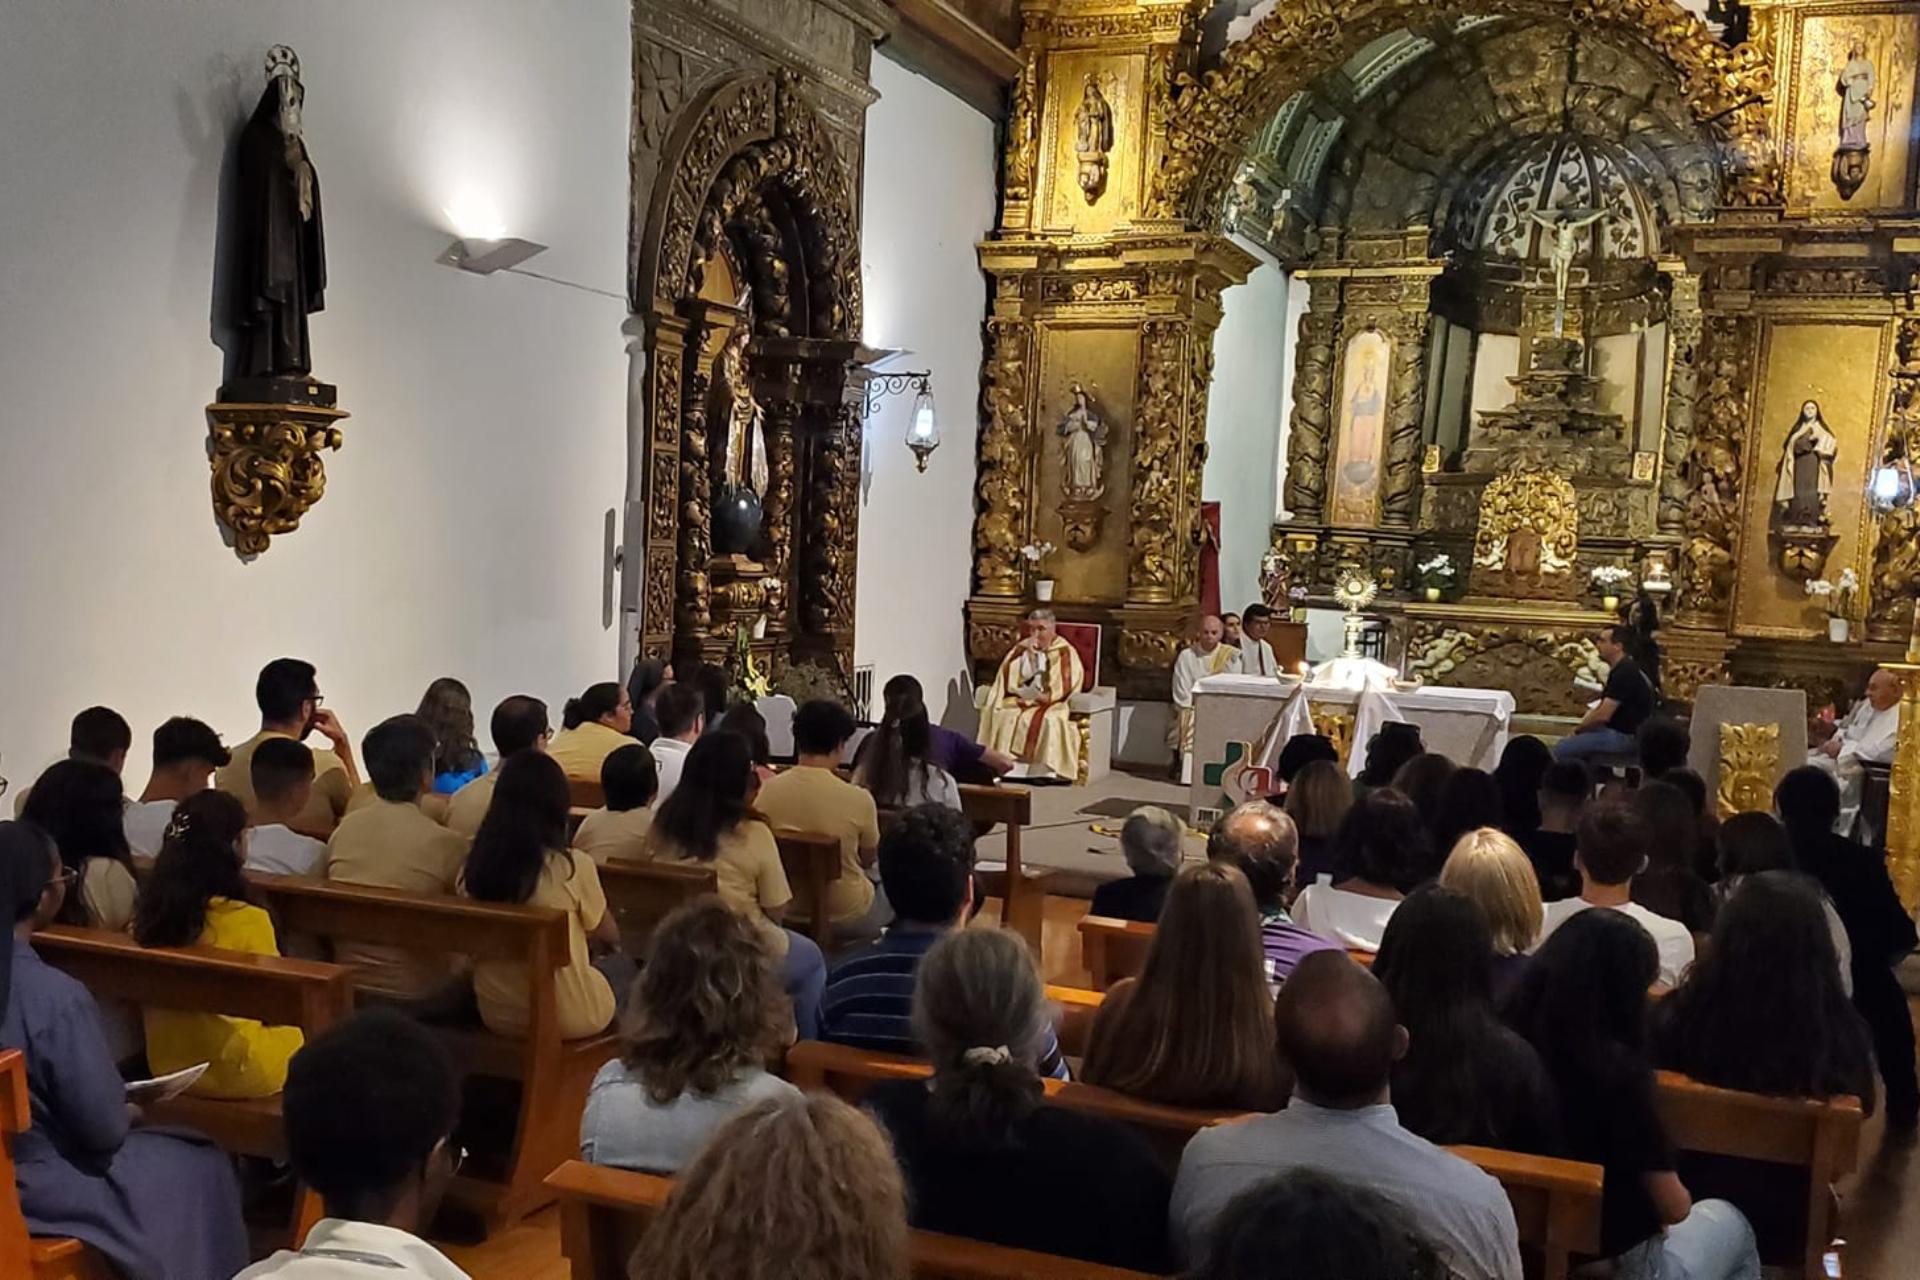 Imagen destacada del artículo: La Diócesis de Bragança-Miranda promueve una cadena de oración de 144 horas